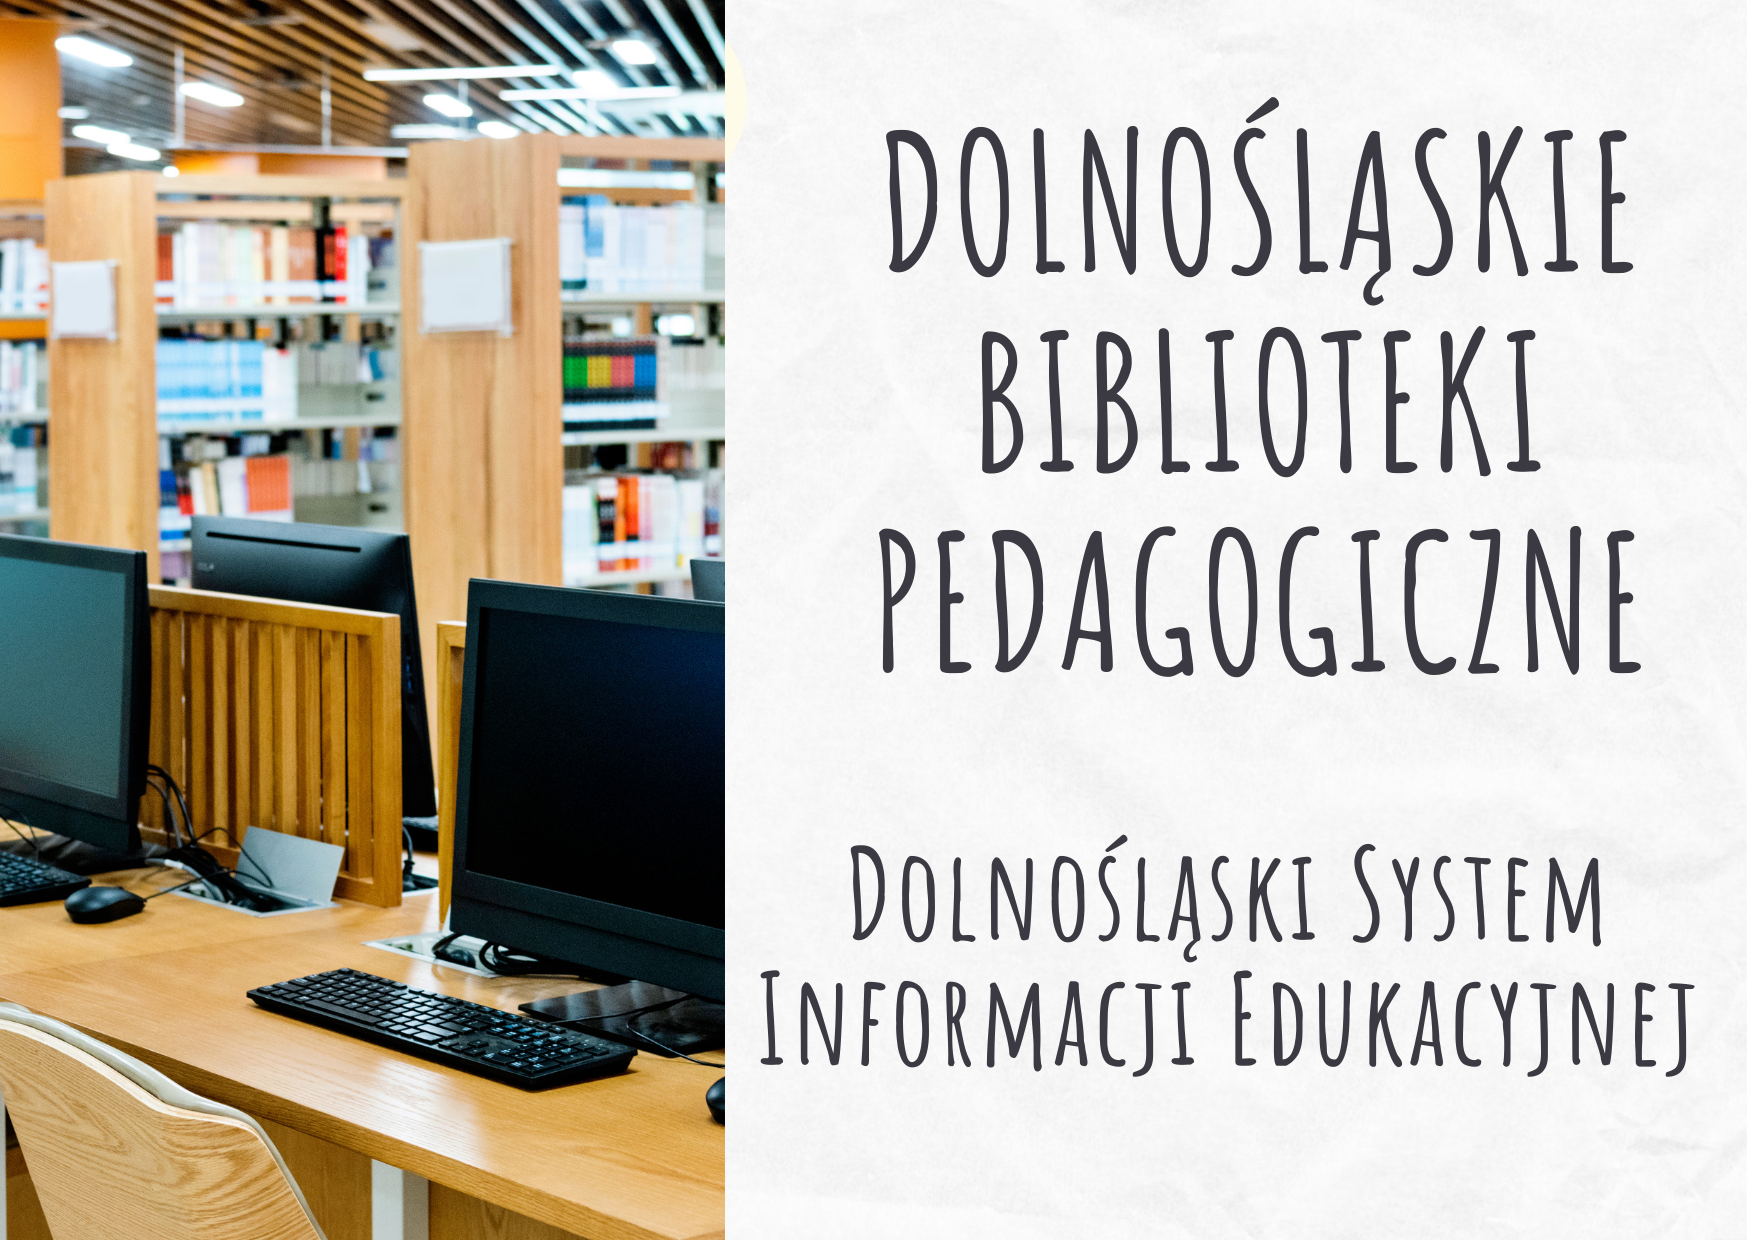 DSIE: Dolnośląskie Biblioteki Pedagogiczne